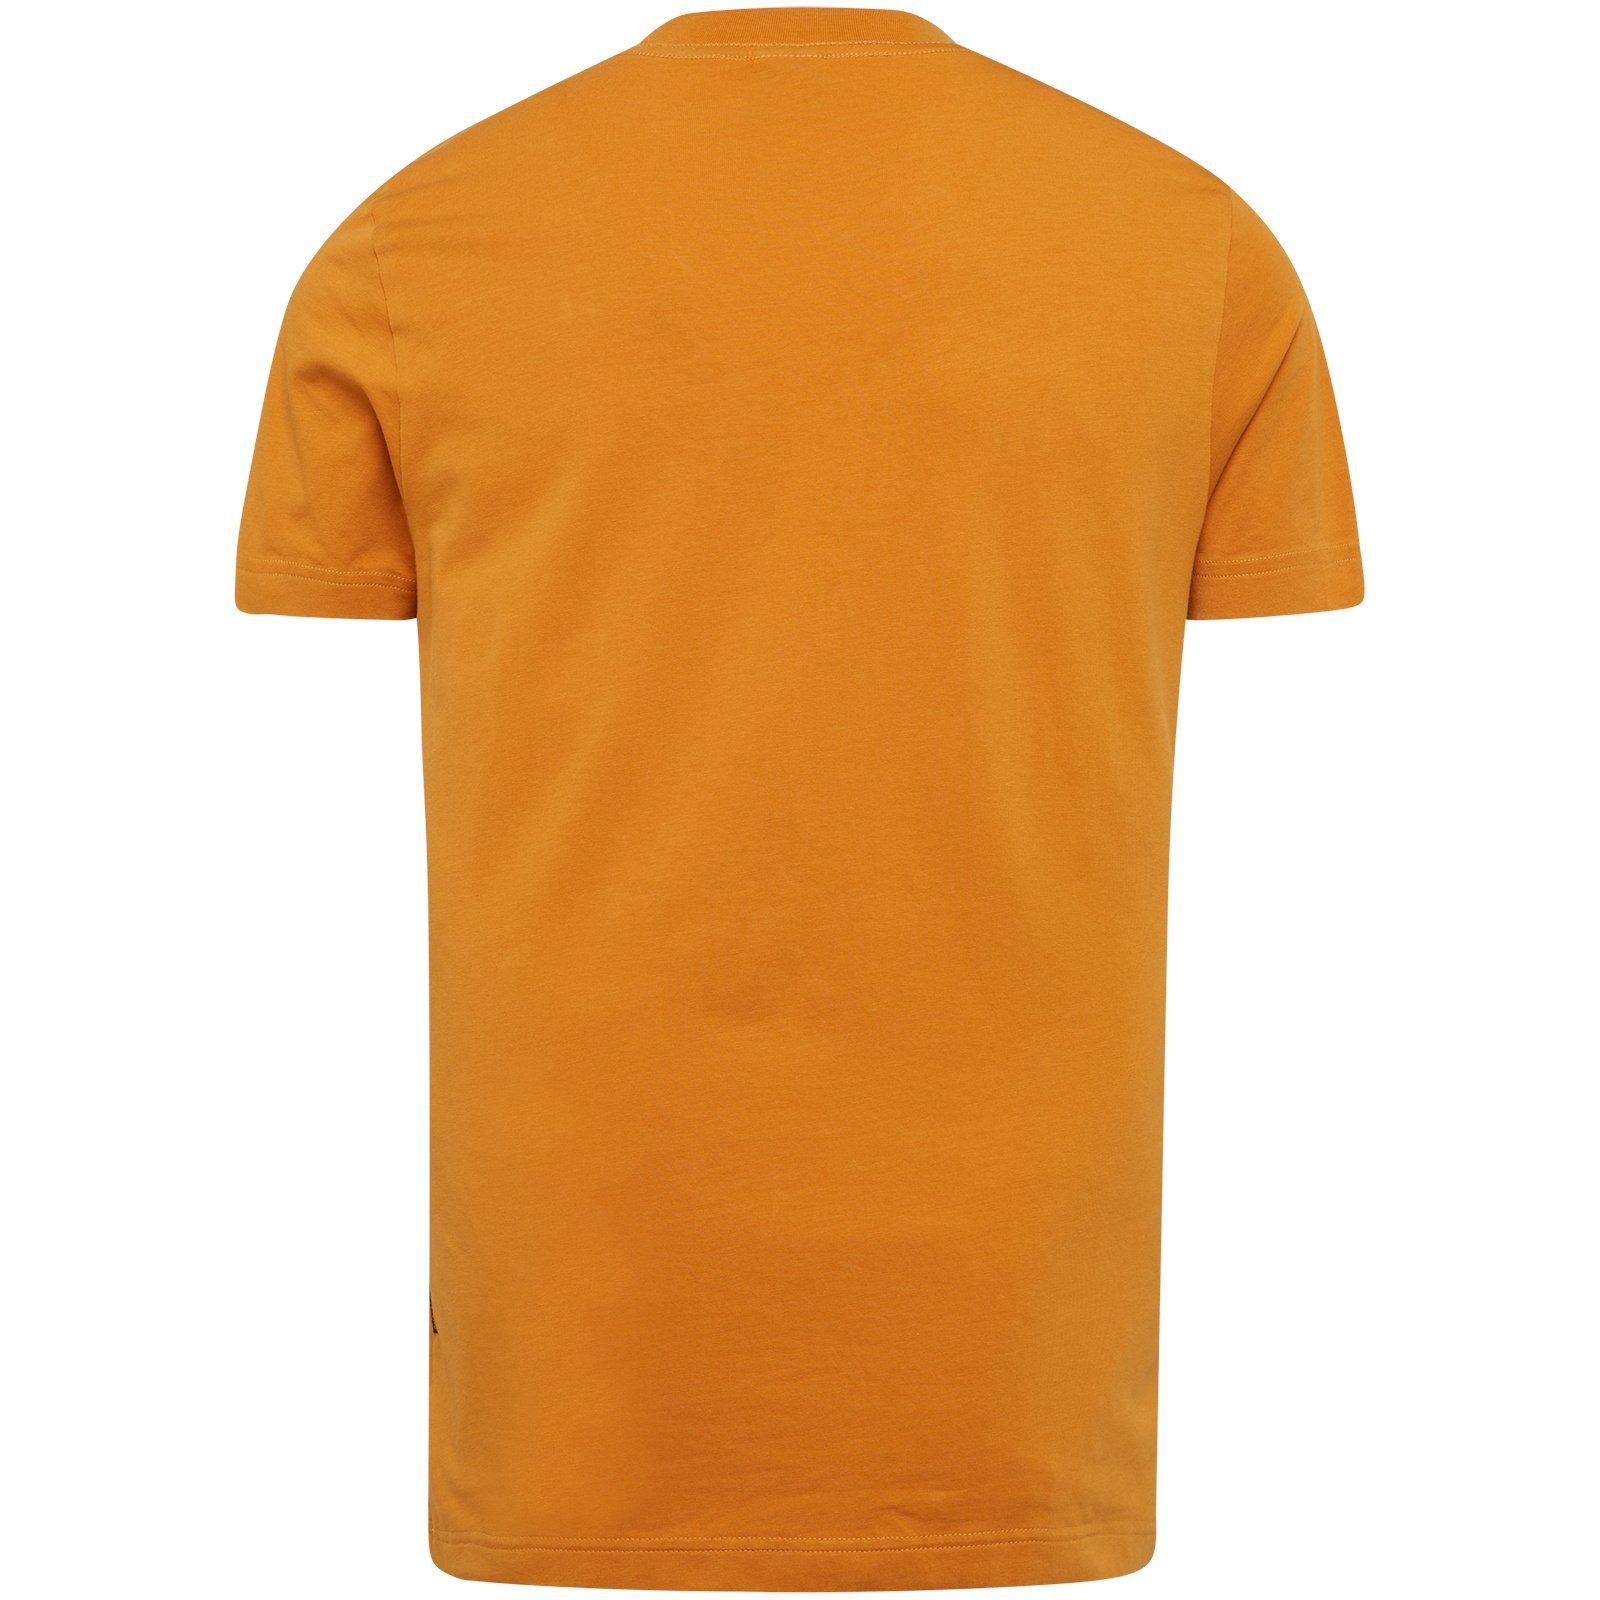 Oak elastane cotton jersey T-Shirt Short PME Golden LEGEND r-neck sleeve